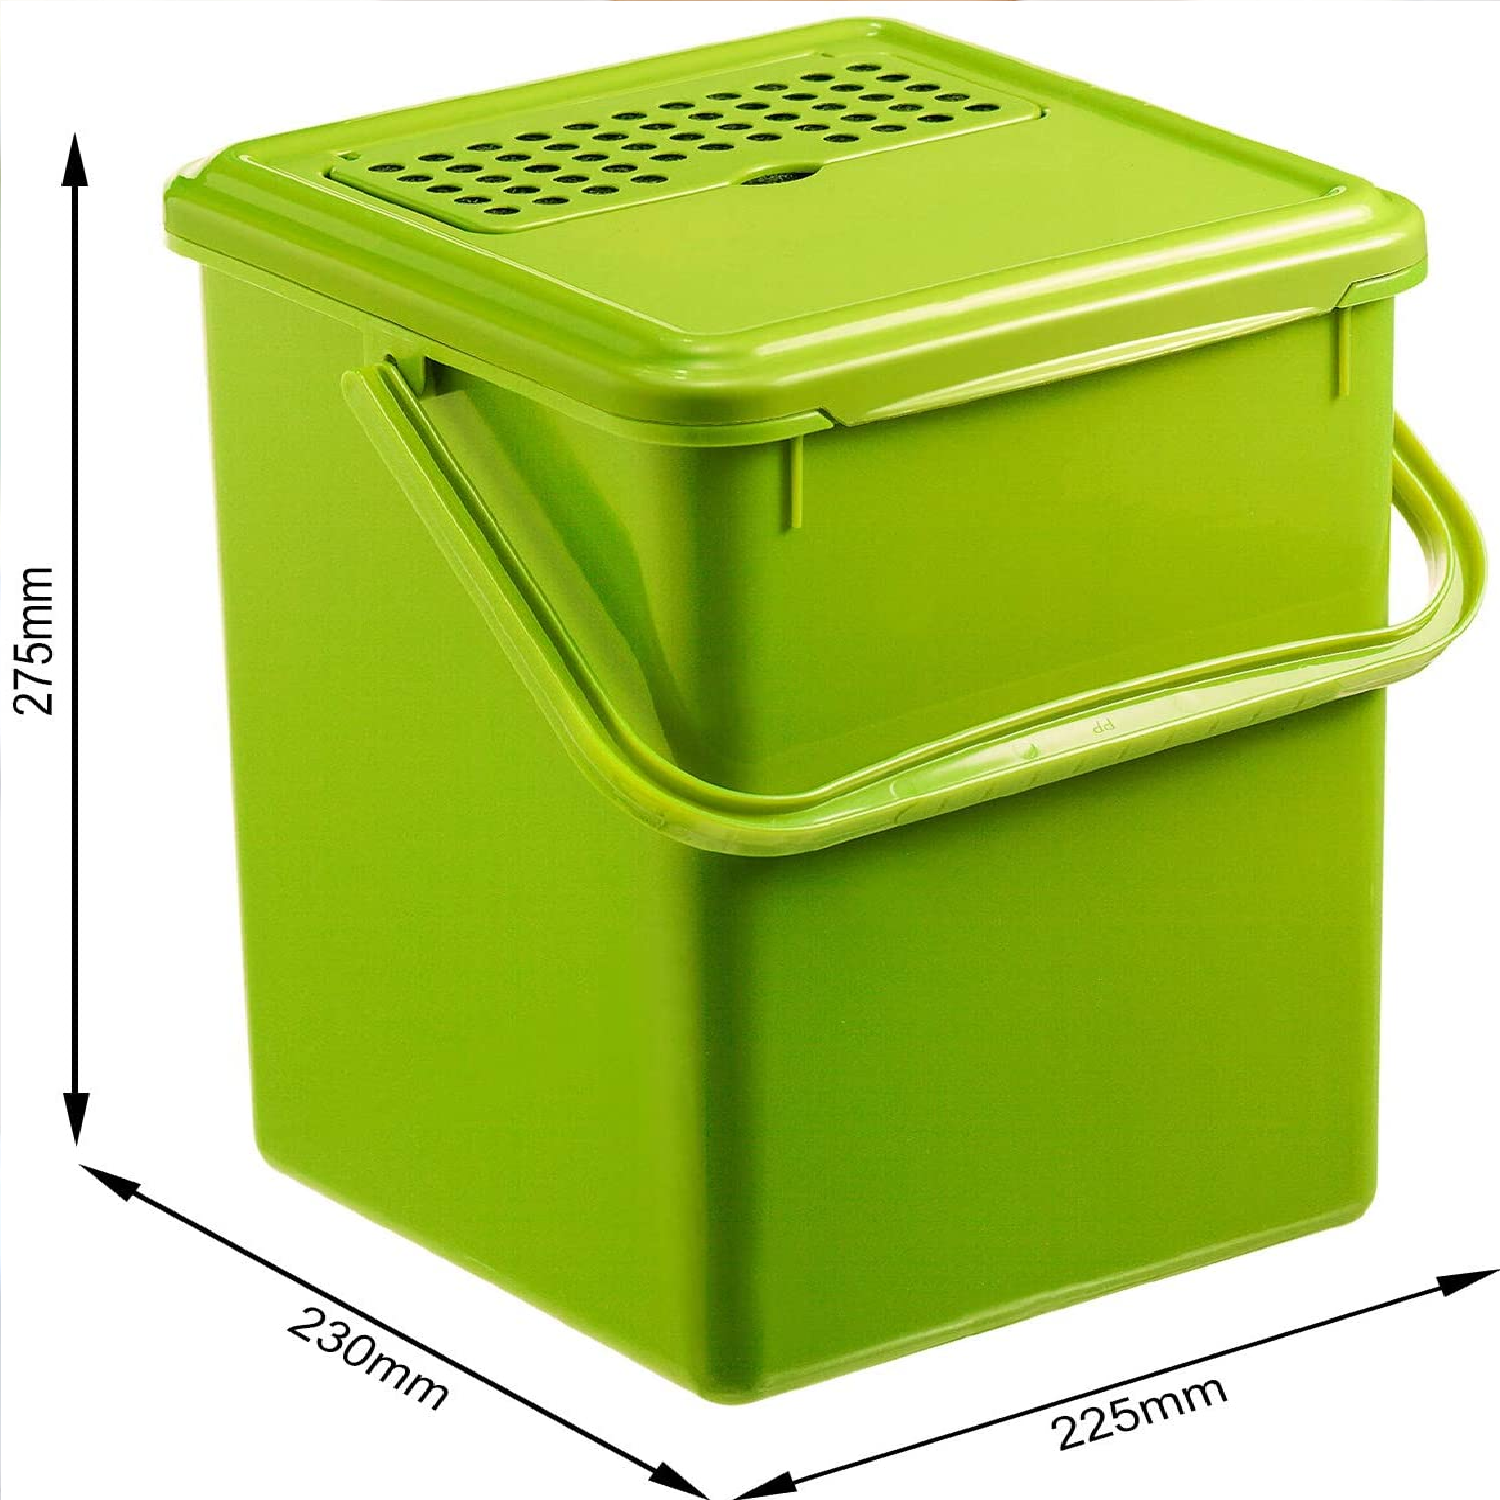 Komposteimer 9l mit Aktivkohlefilter im Deckel, Kunststoff (PP) BPA-frei, grün, 9l (23,0 x 22,5 x 27,5 cm)